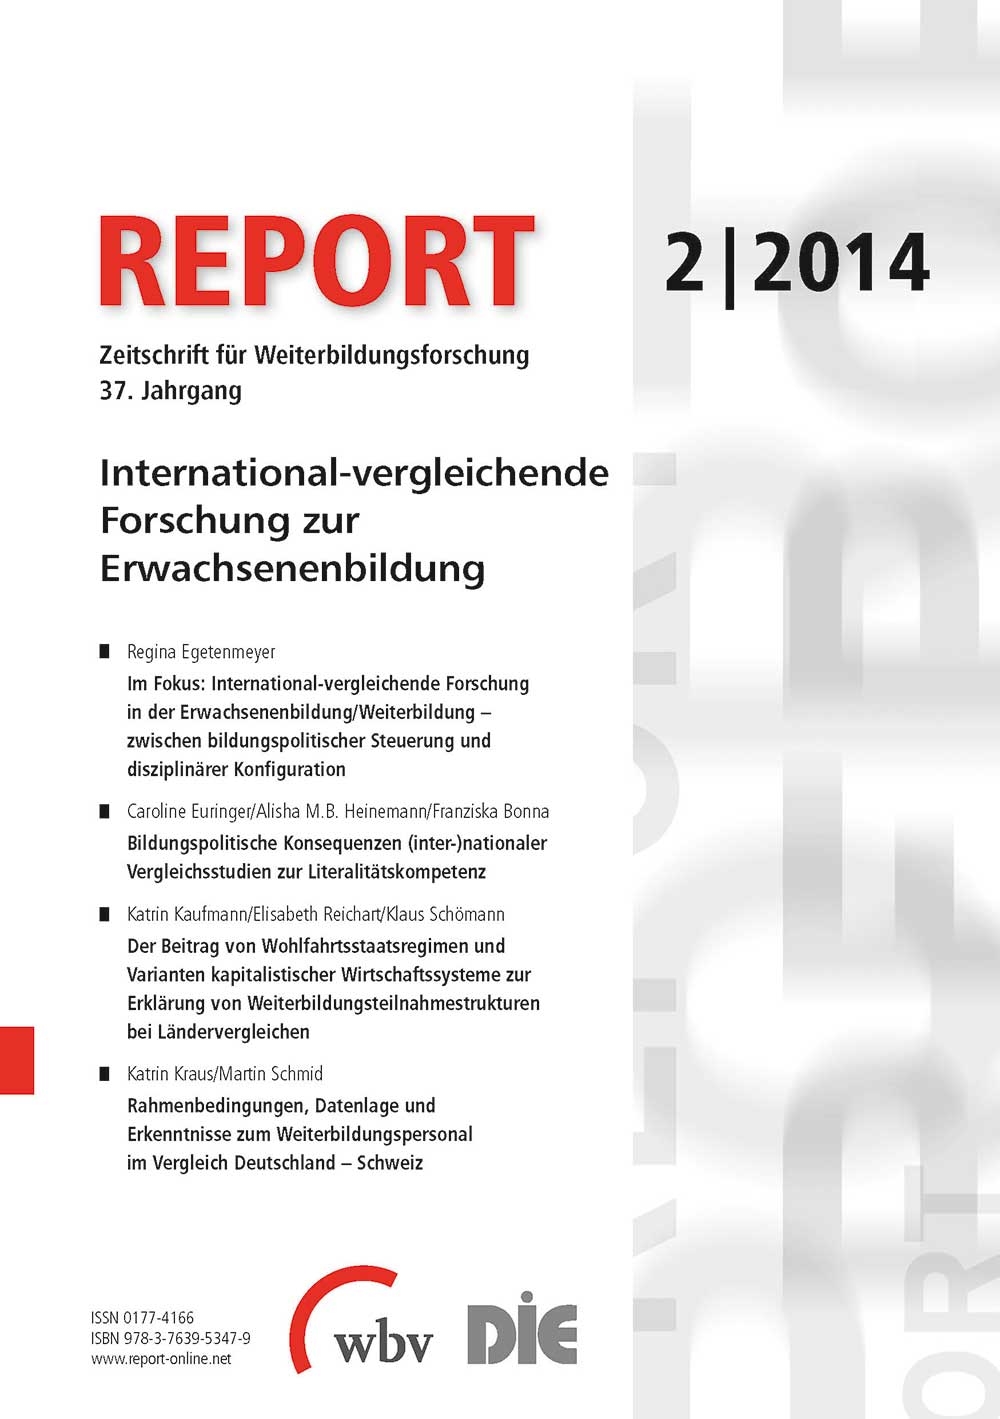 REPORT - Zeitschrift für Weiterbildungsforschung 02/2014